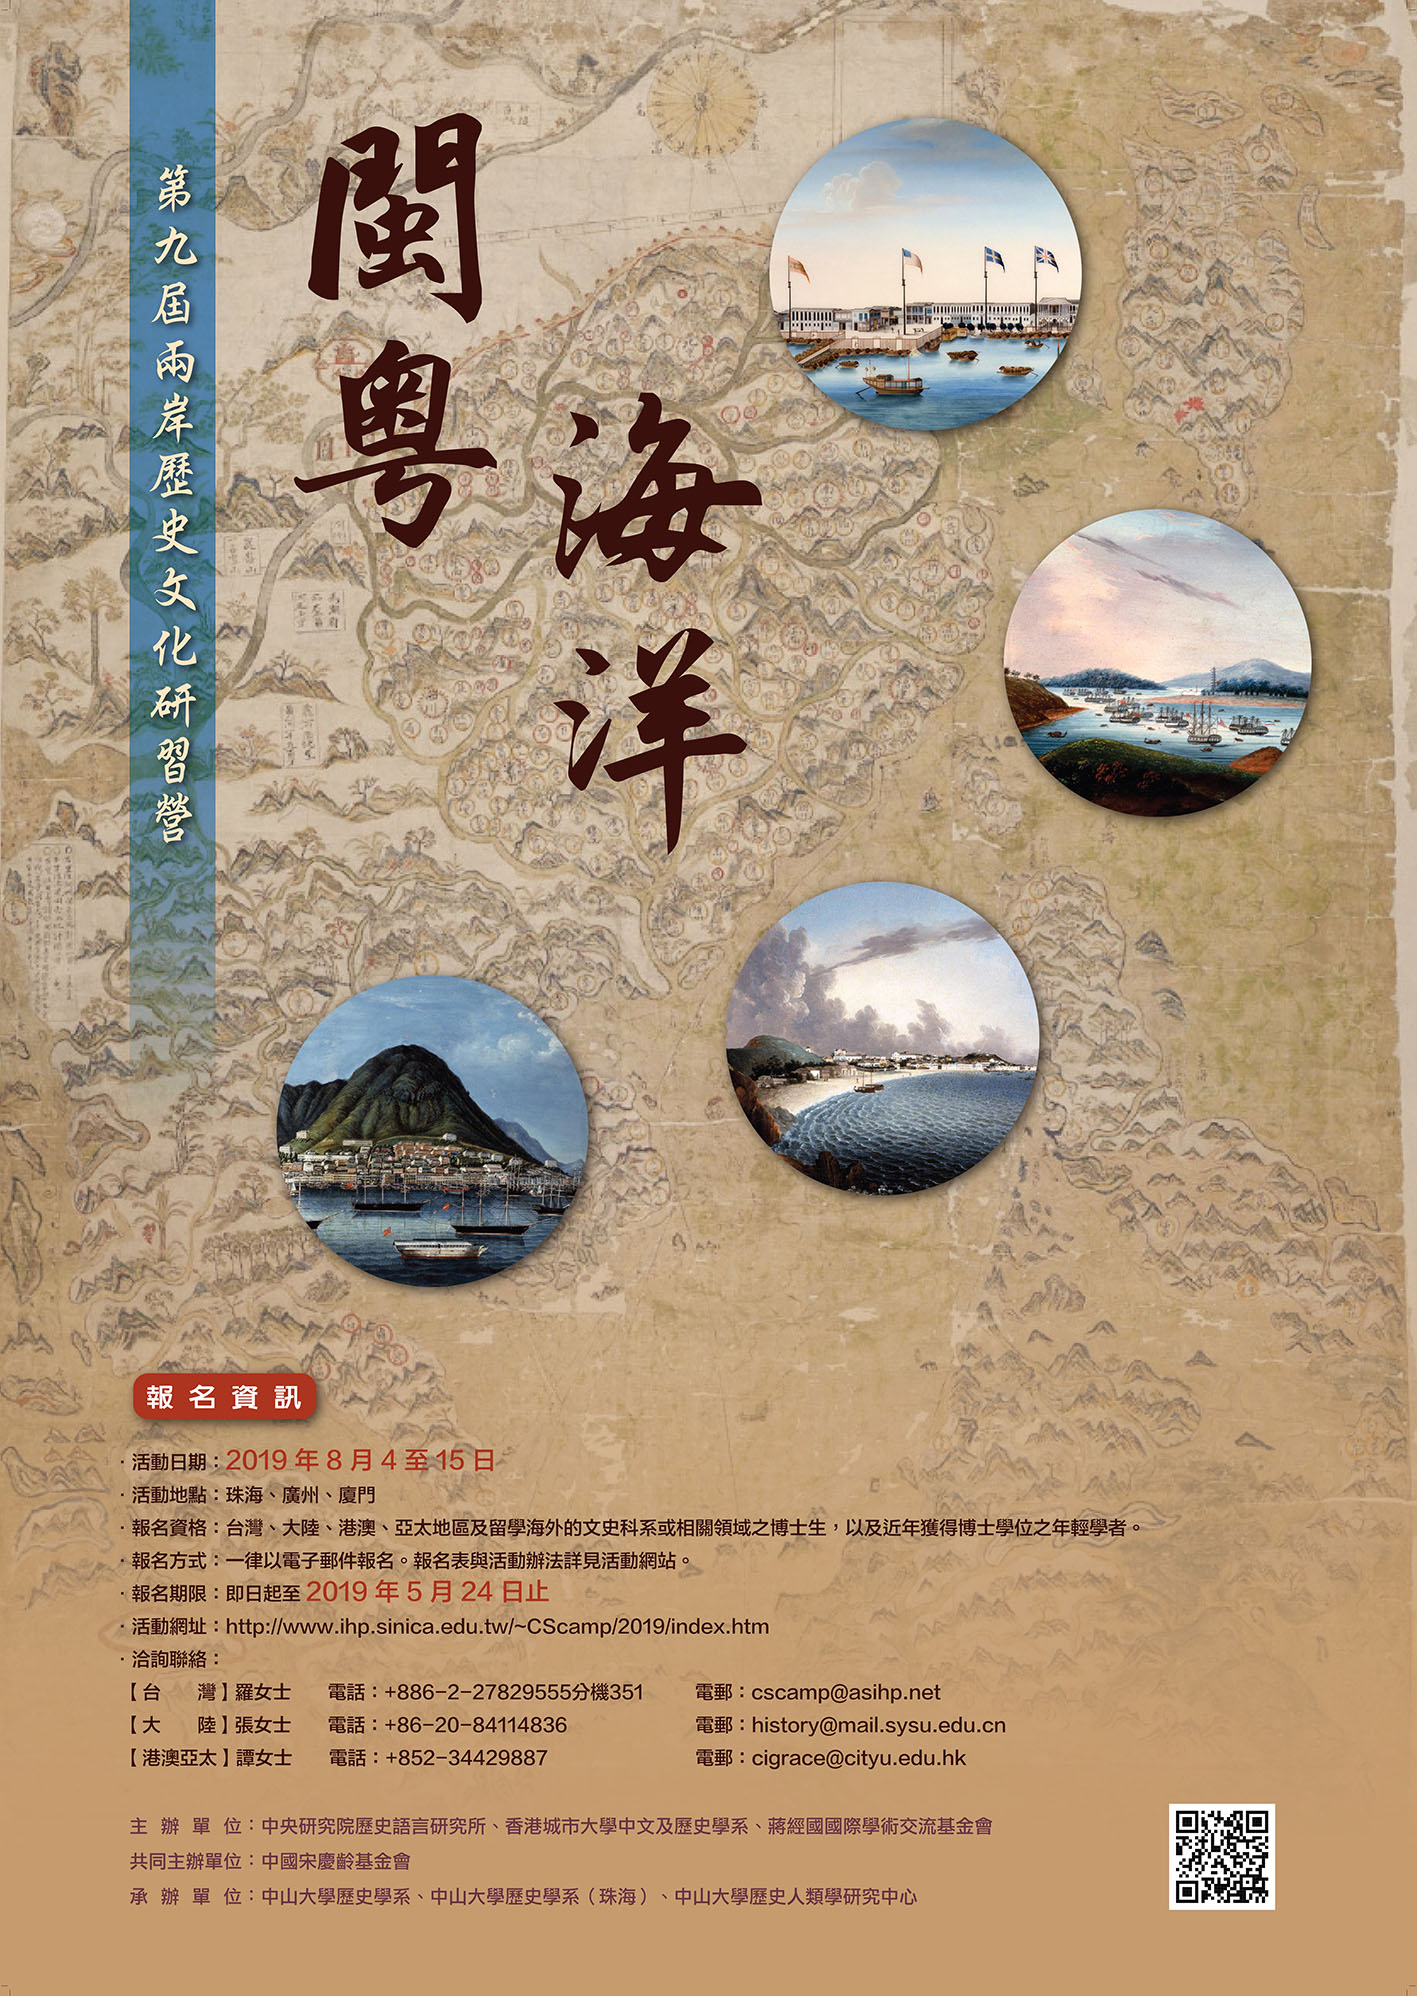 2019 History &#038; Culture: Cross-Strait Workshop